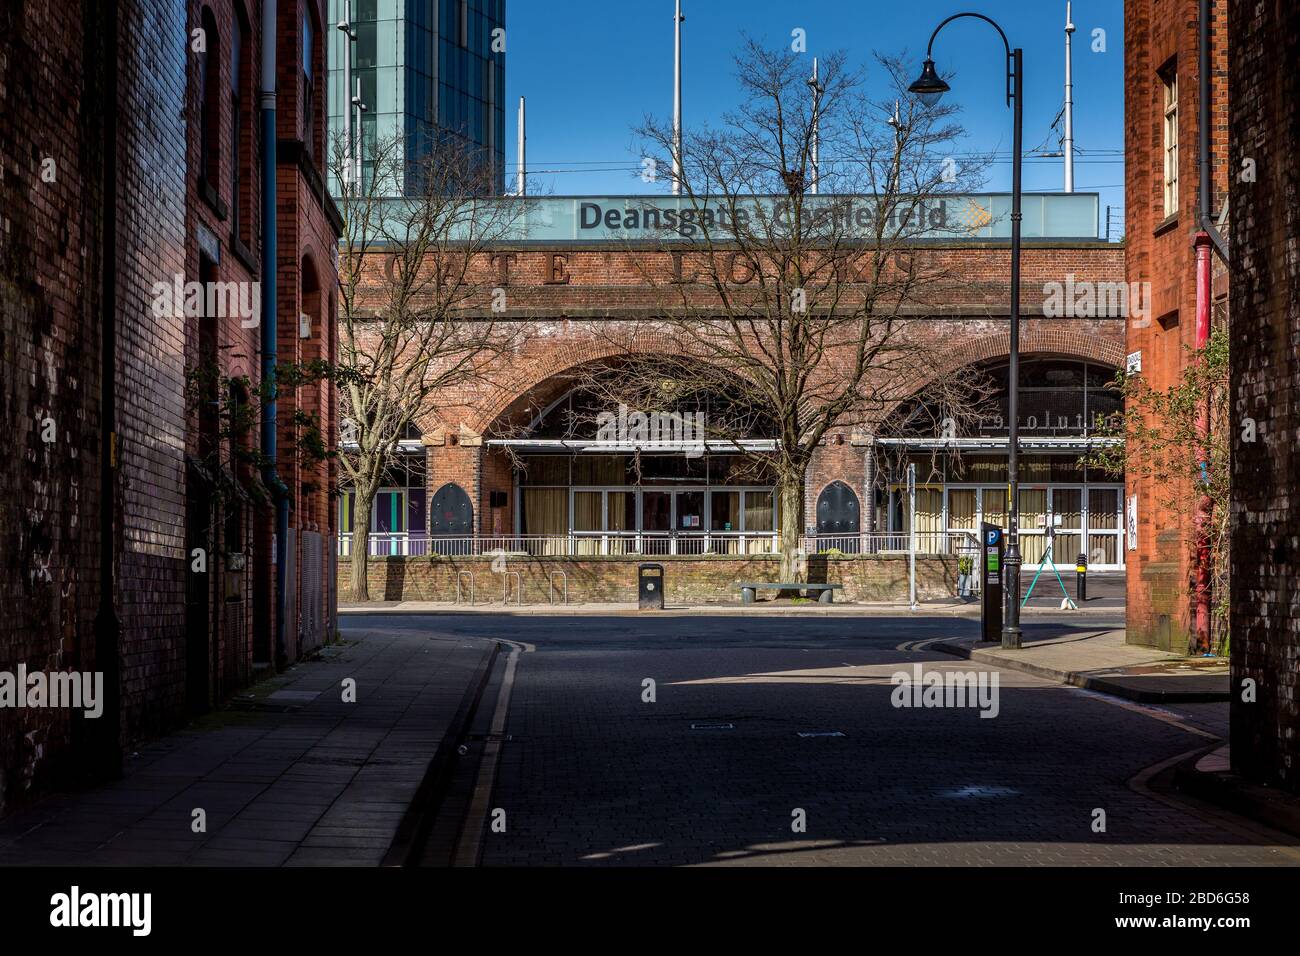 Strade vuote durante l'epidemia di Coronavirus, Deansgate Locks, Manchester City Center, Regno Unito, aprile 2020. Foto Stock